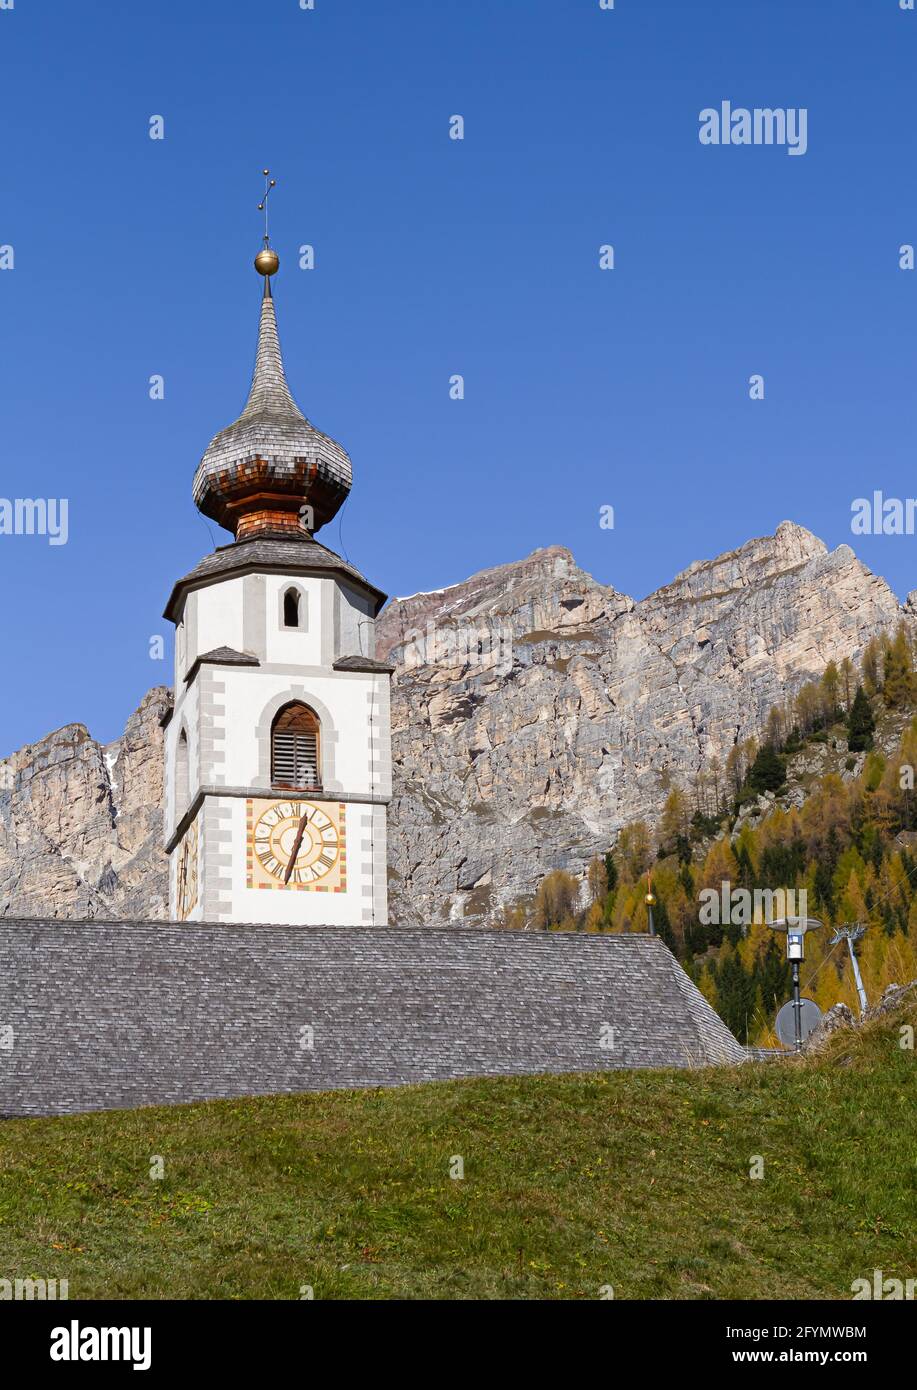 Calfosch, Italia - 27 ottobre 2014: Calfosch è il paese più alto con residenti permanenti nella Val Badia a 1,645 metri. Chiesa di San Vigil Foto Stock